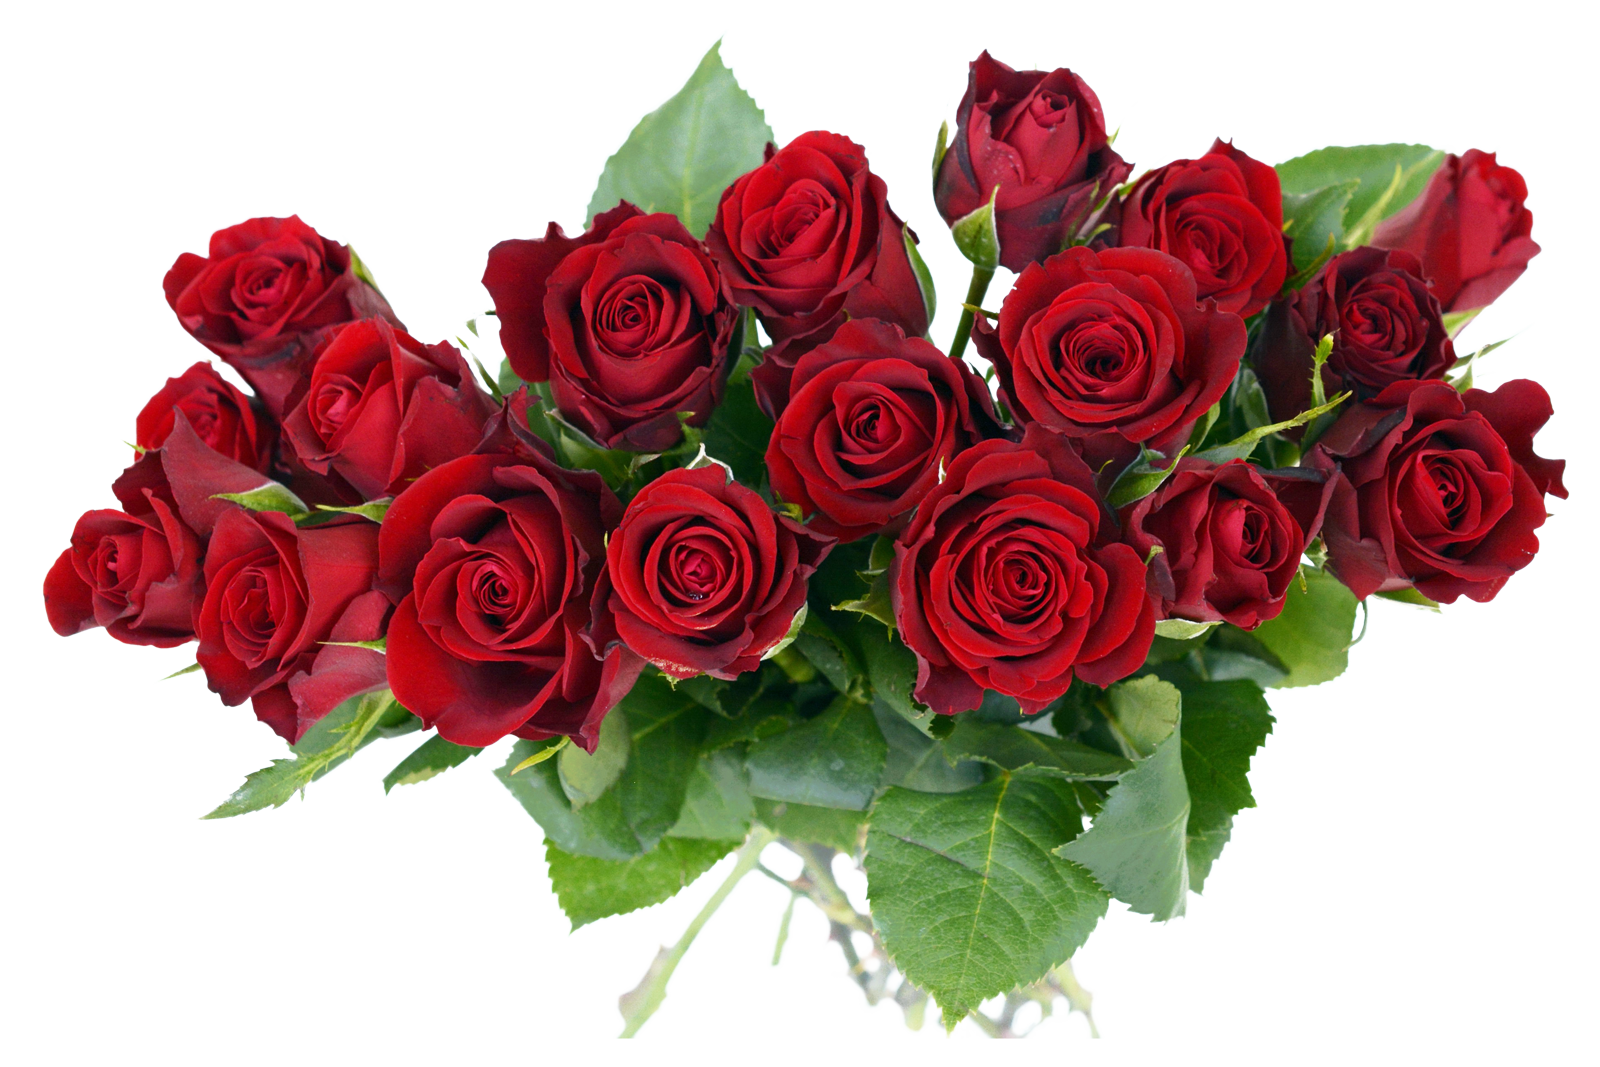 Những bông hoa hồng mới cắm với hình ảnh trong suốt HQ là một trong những mẫu thiết kế hoa hồng tuyệt vời nhất để sử dụng trong bất kỳ dự án thiết kế nào. Với sự phóng khoáng và chất lượng cao, bạn sẽ không thể tin được rằng bạn có thể tải xuống ảnh hoa hồng trong suốt HQ này miễn phí. Hãy dùng chúng để tôn vinh tình yêu và sự đam mê của bạn.